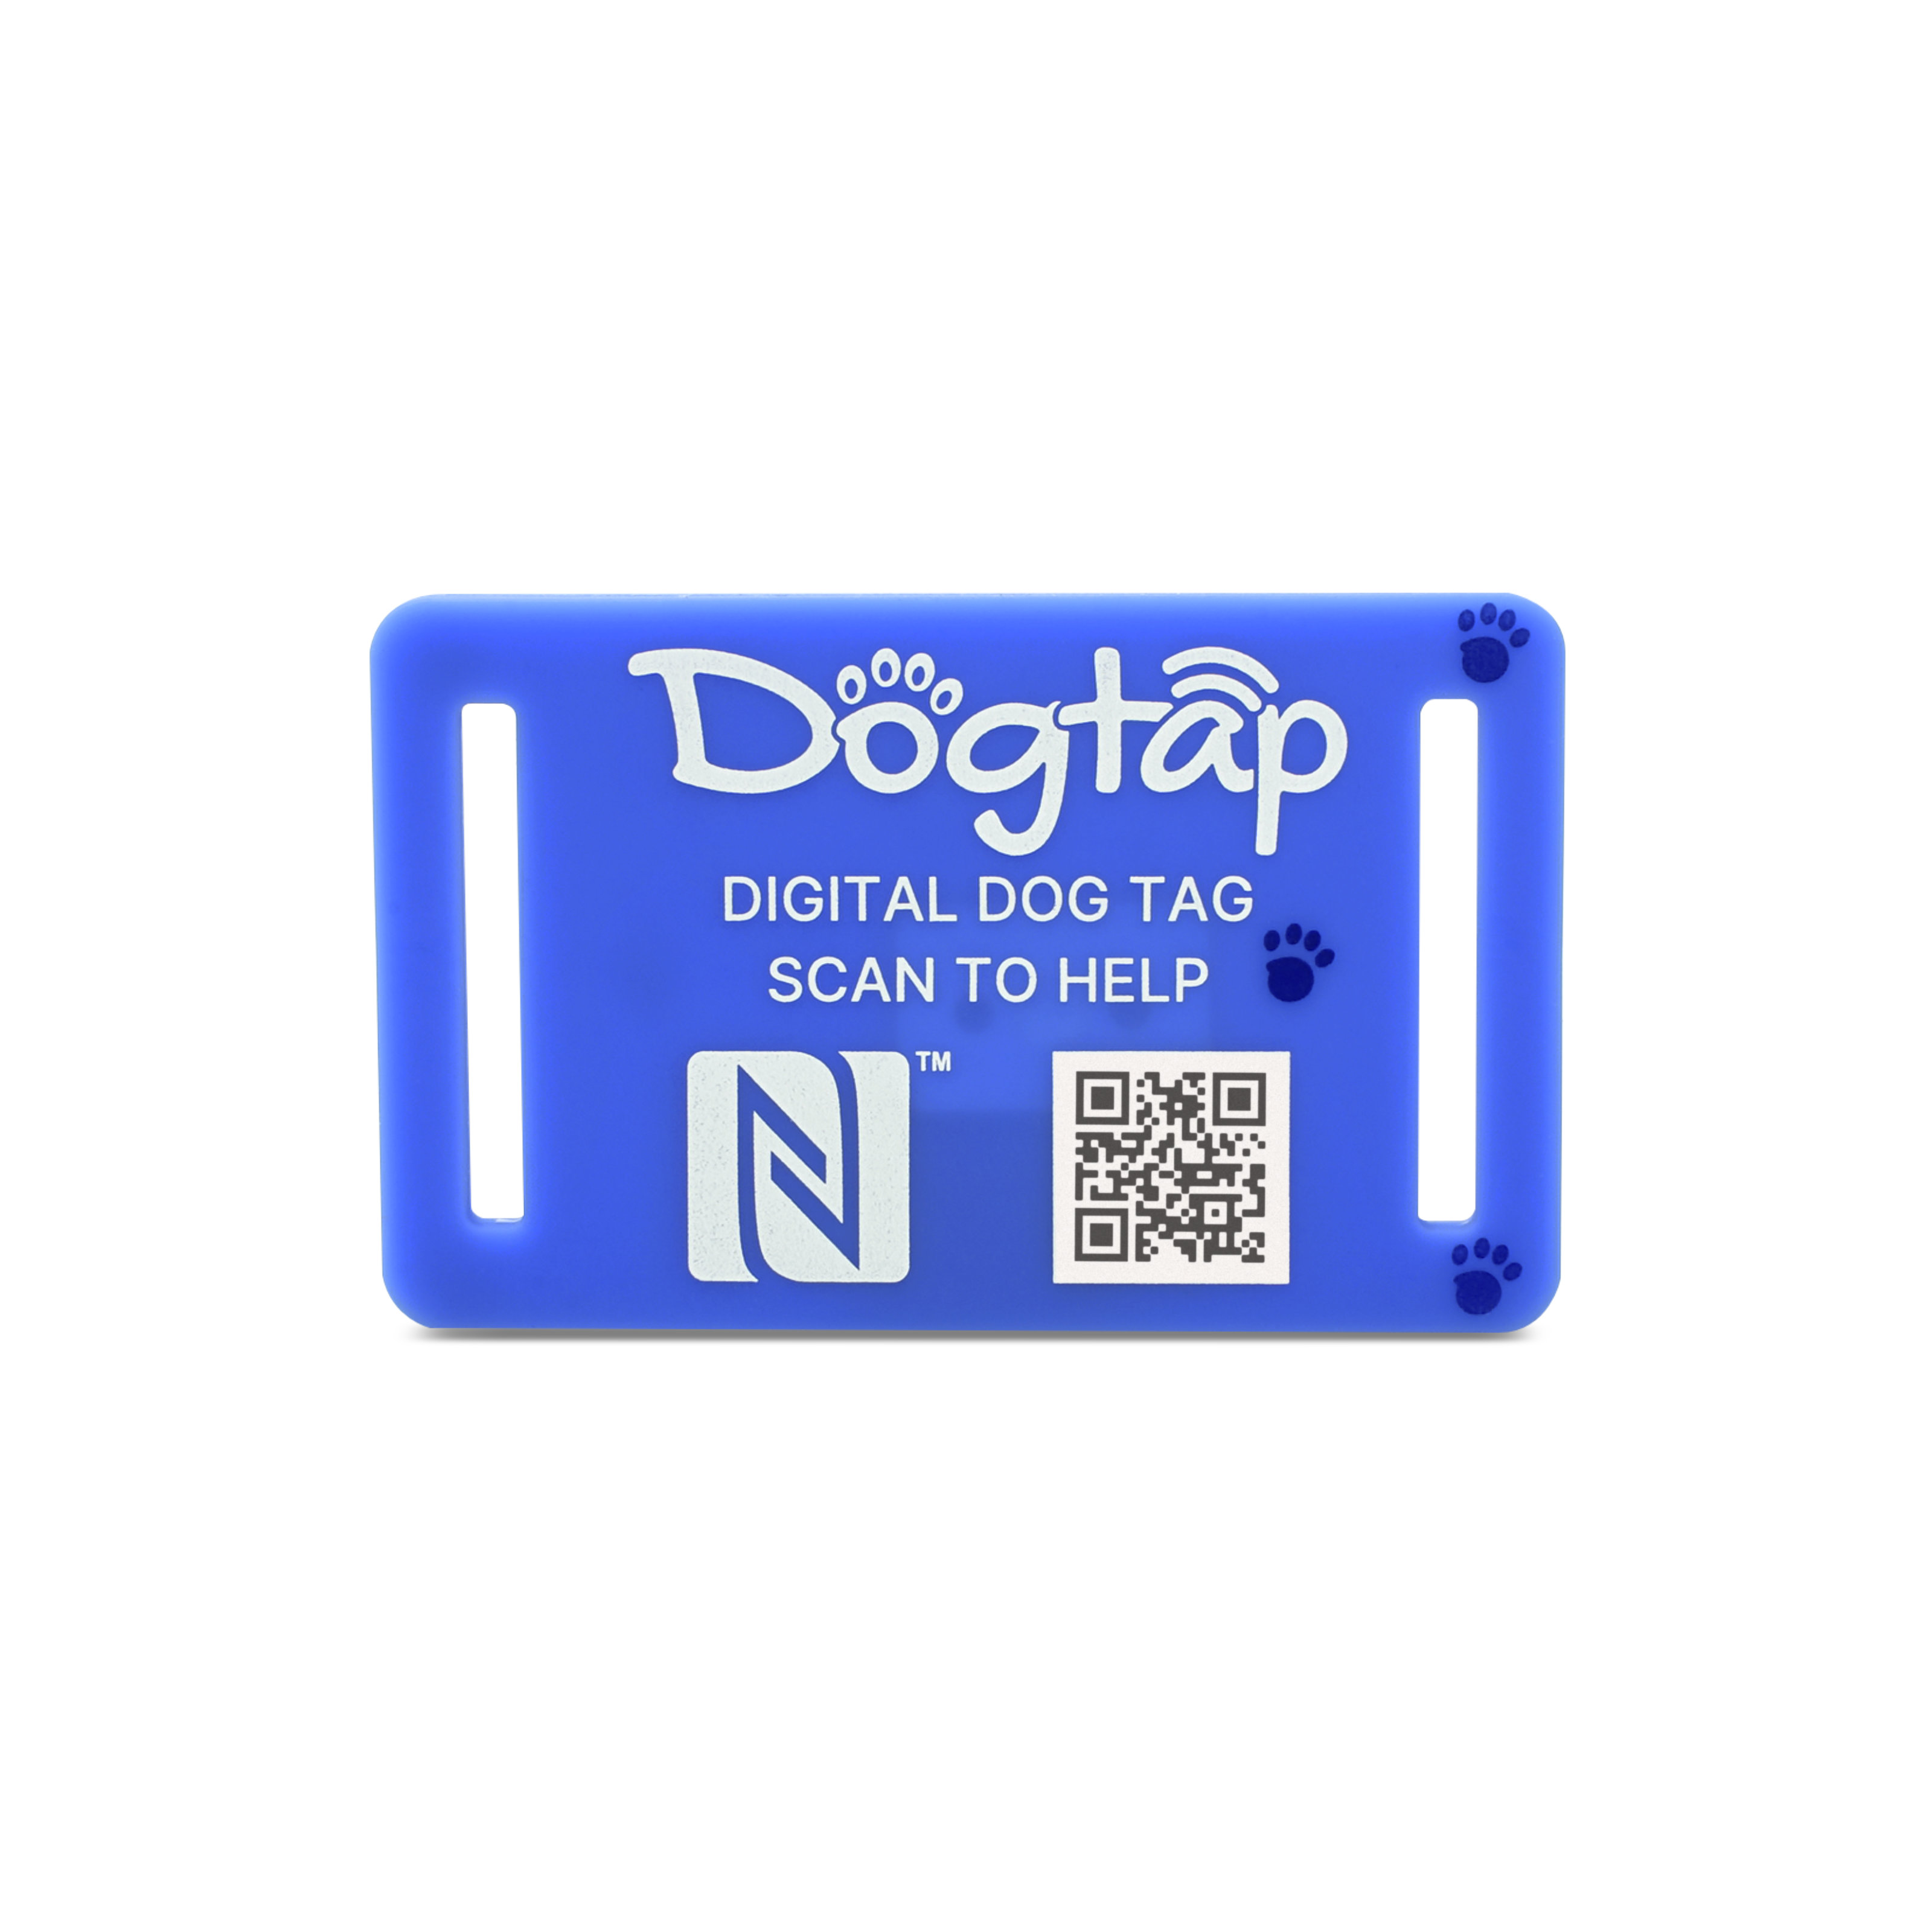 Dogtap Light Big aus Silikon in blau mit englischer Aufschrift